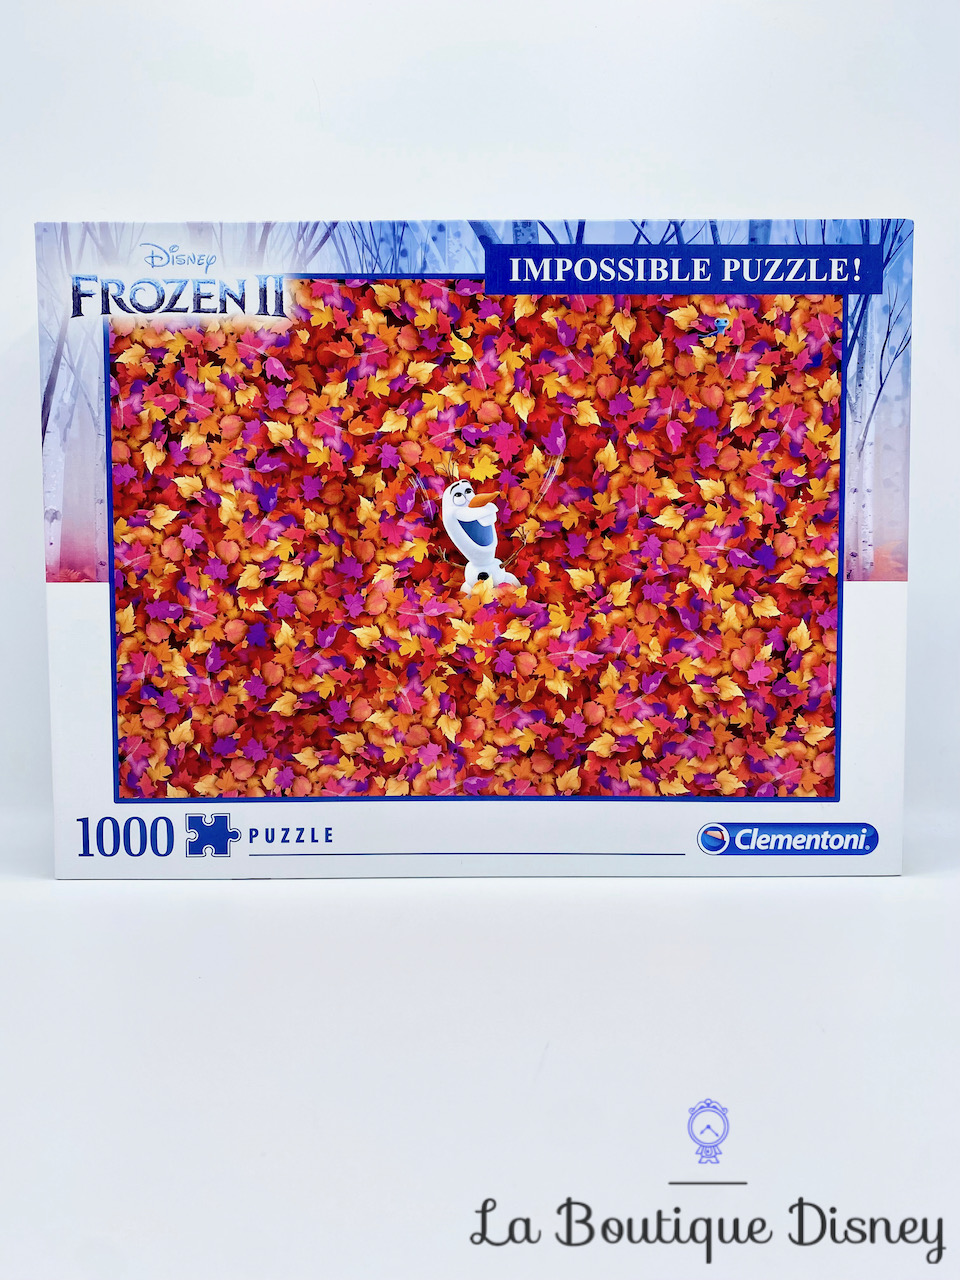 Puzzle 1000 Pièces Impossible Puzzle Olaf La reine des neiges Disney Clementoni Frozen 2